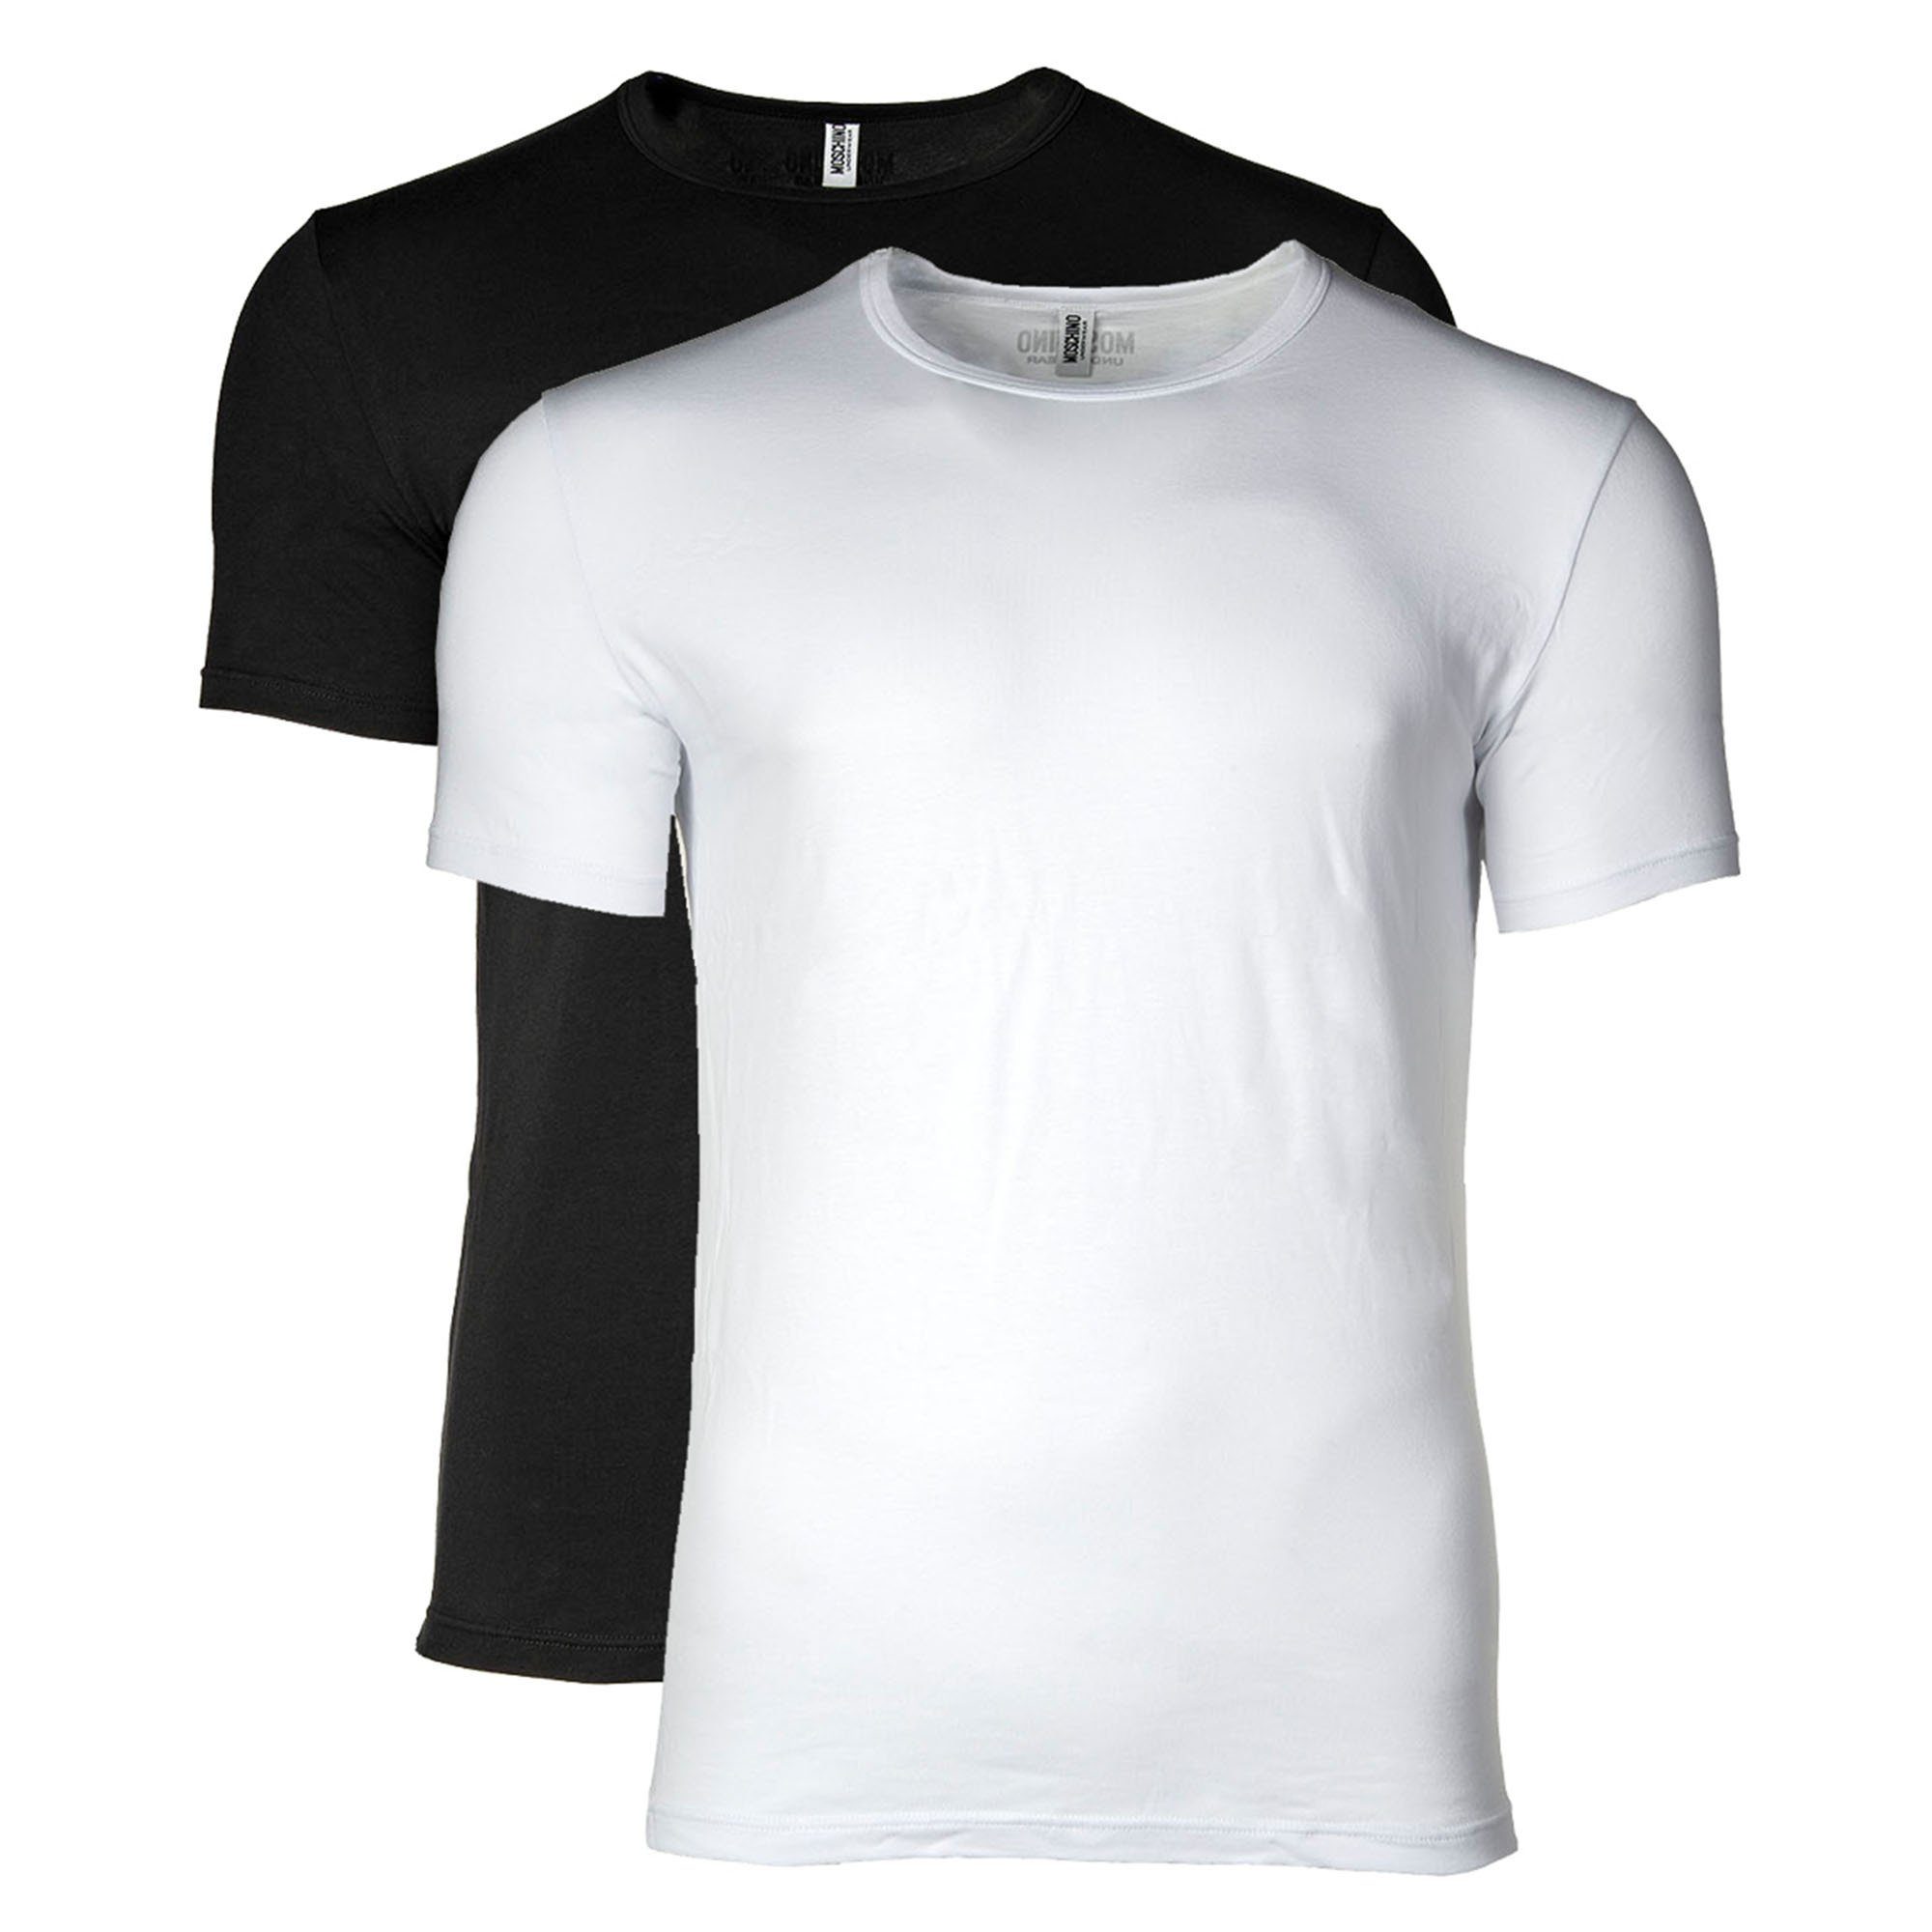 Moschino T-Shirt Herren T-Shirt 2er Pack - Crew Neck, Rundhals Schwarz/Weiß